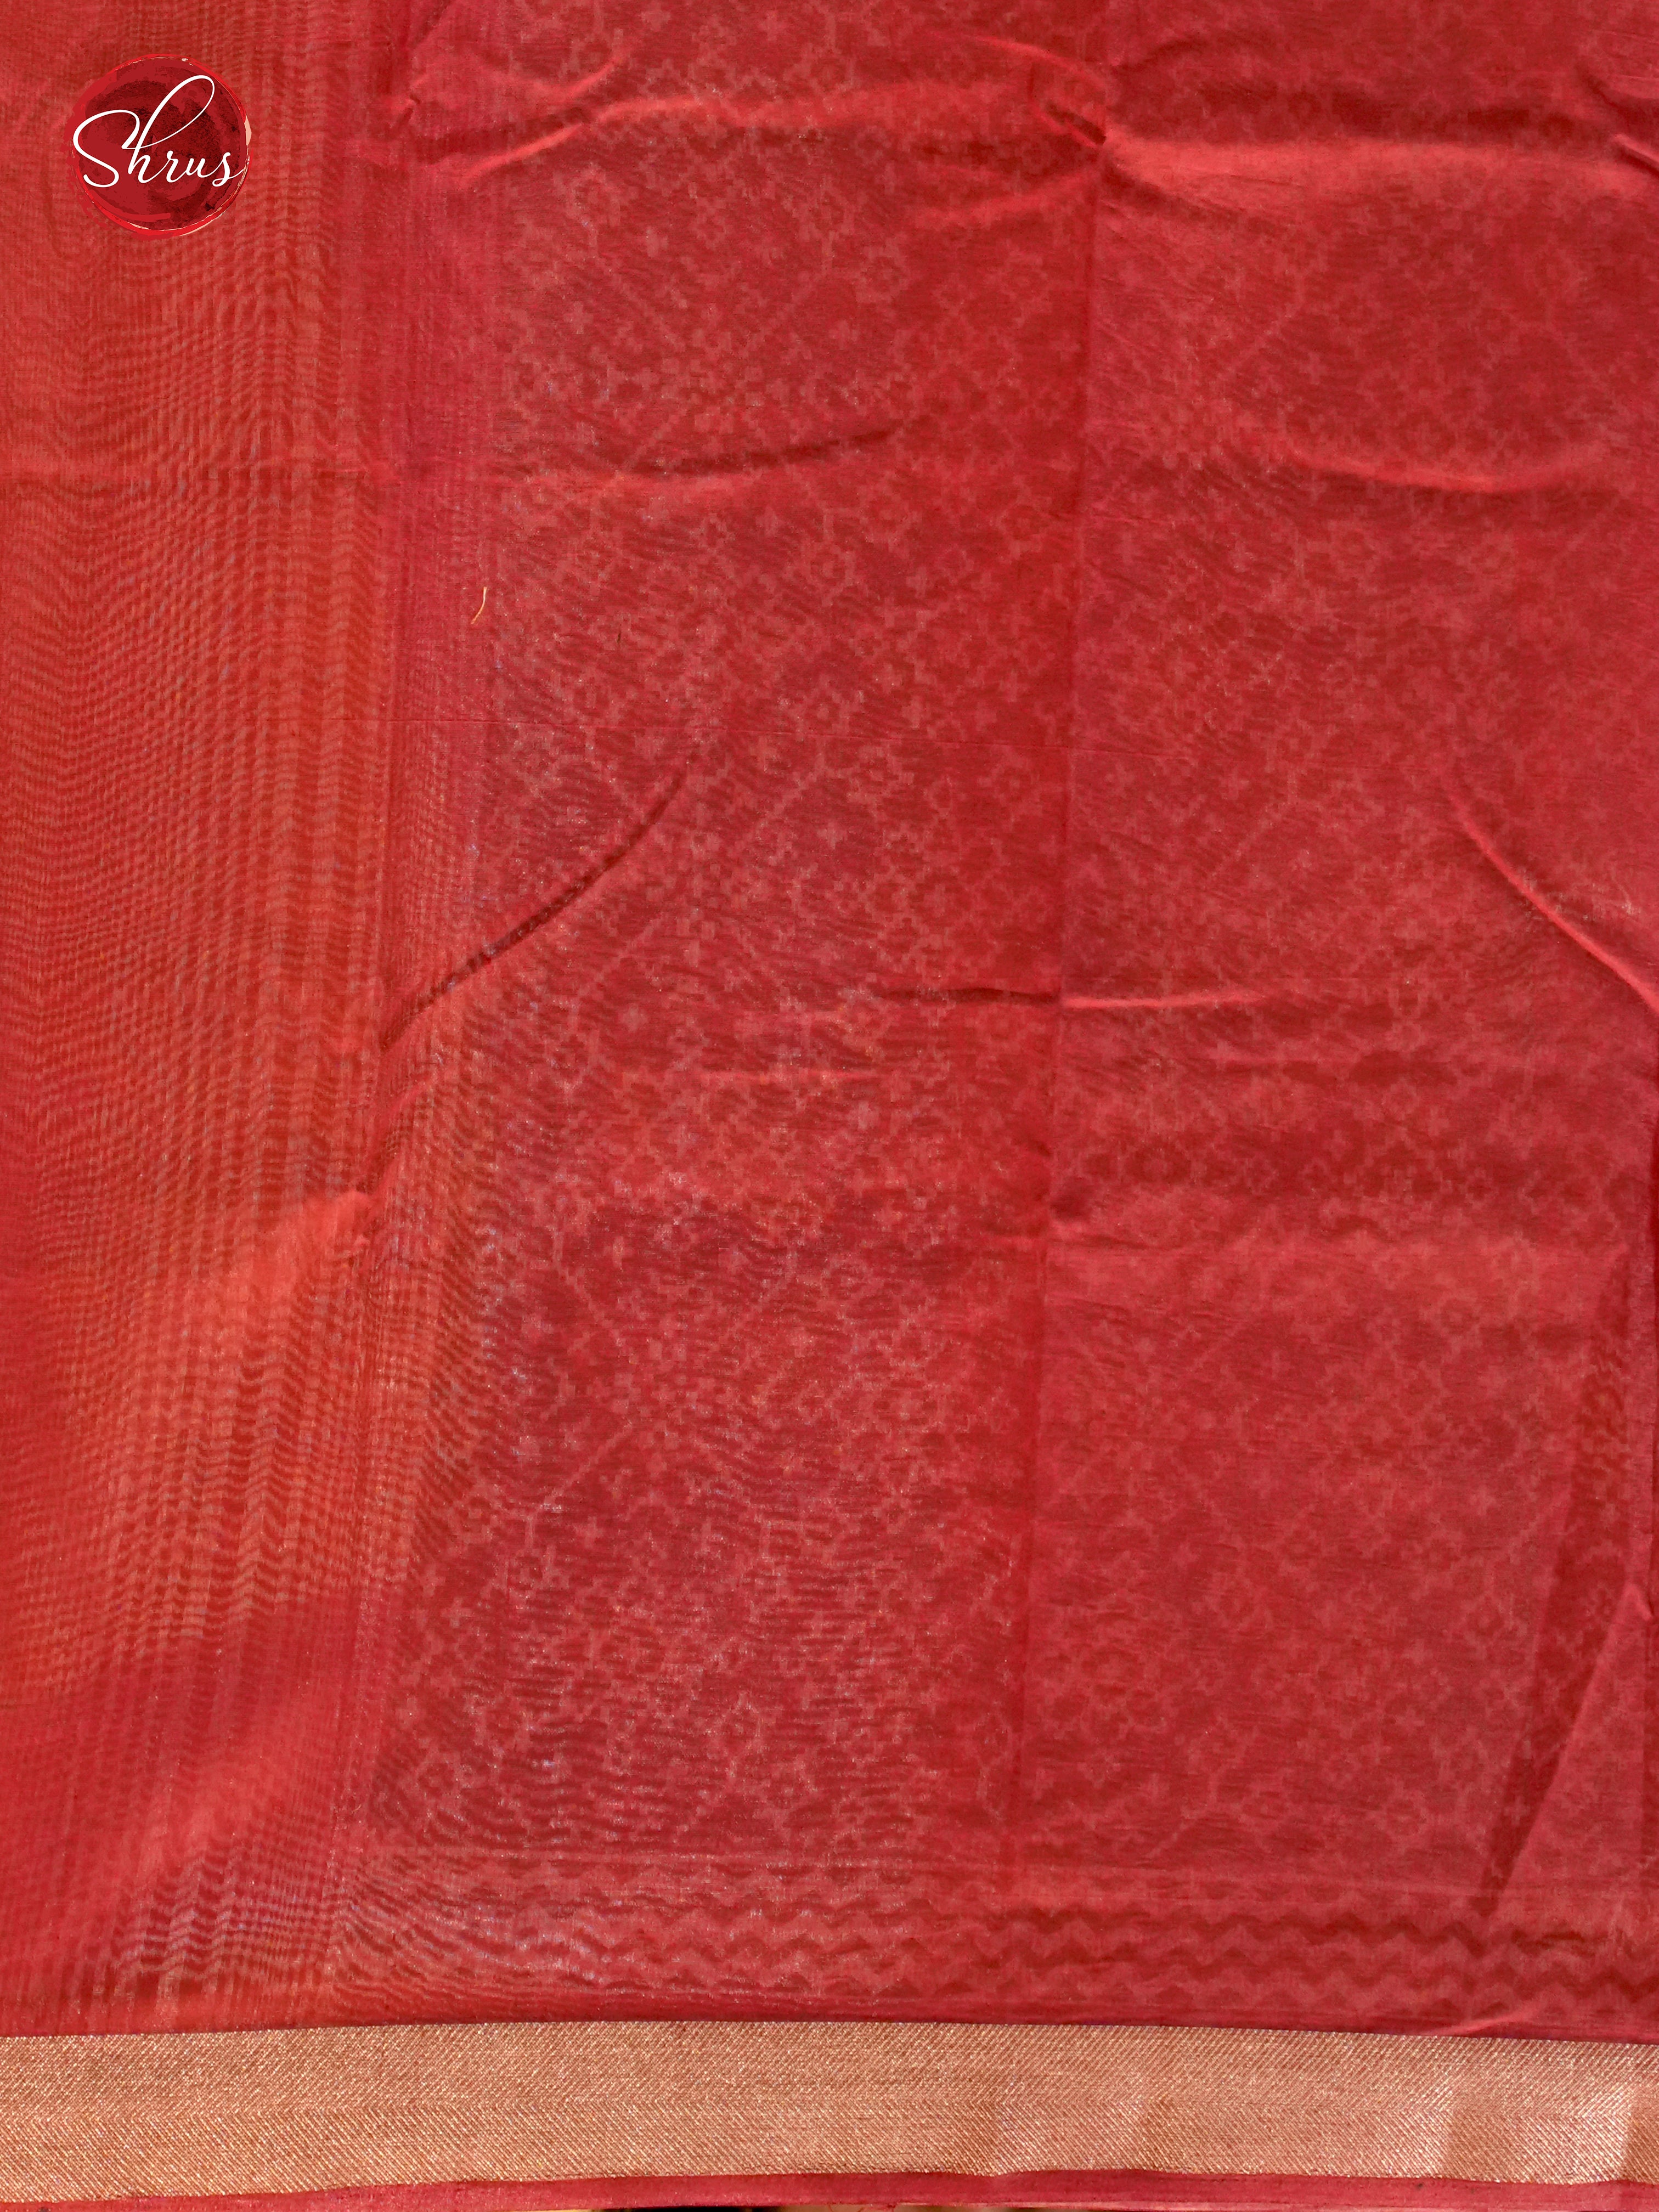 Black & Red - Art Modal - Shop on ShrusEternity.com